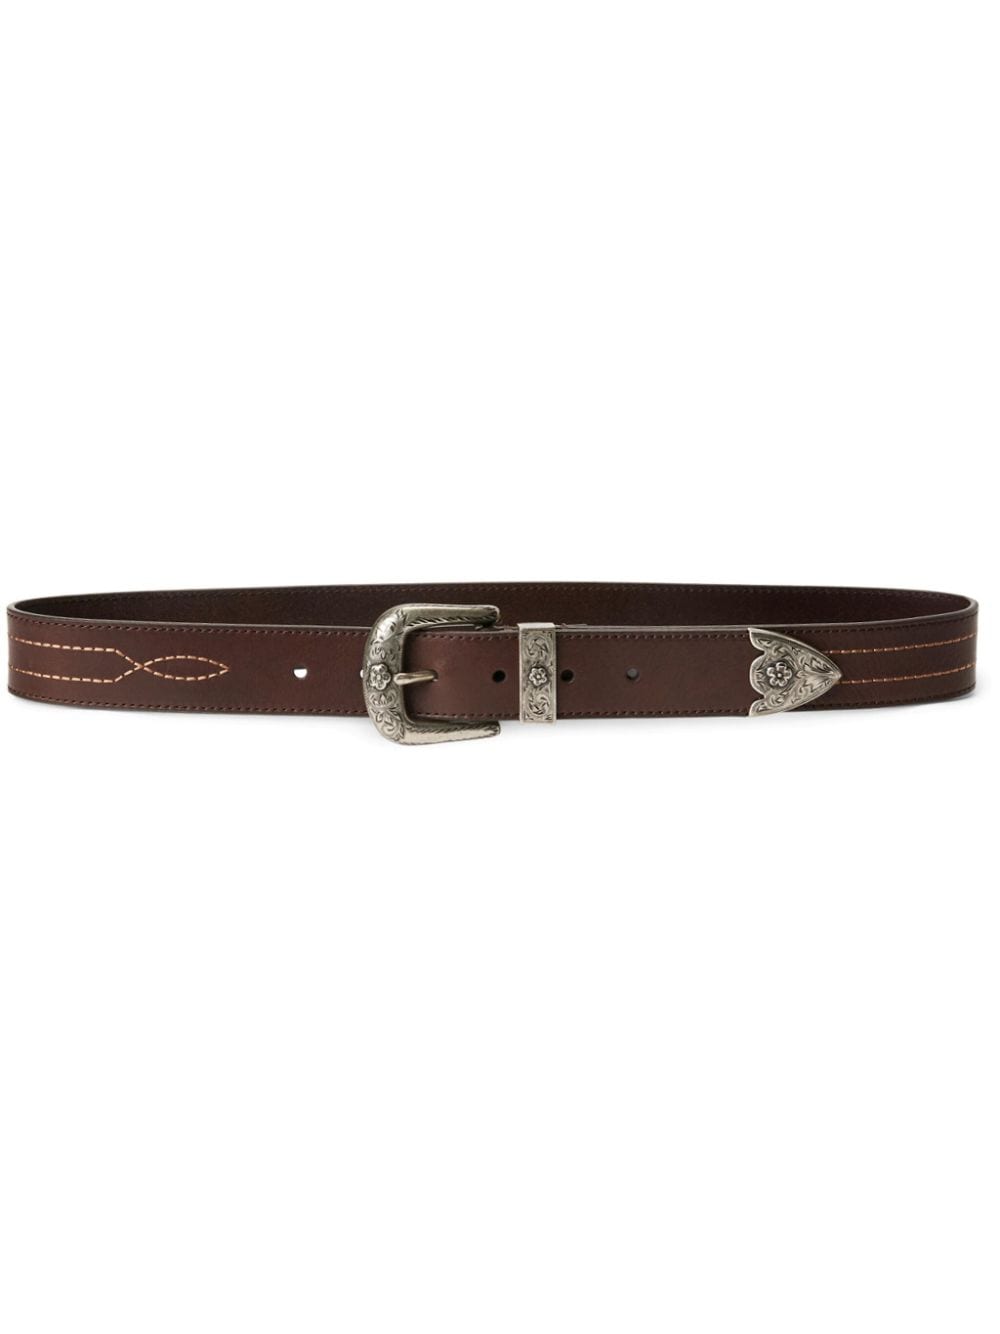 Polo Ralph Lauren contrast-stitching leather belt - Brown von Polo Ralph Lauren